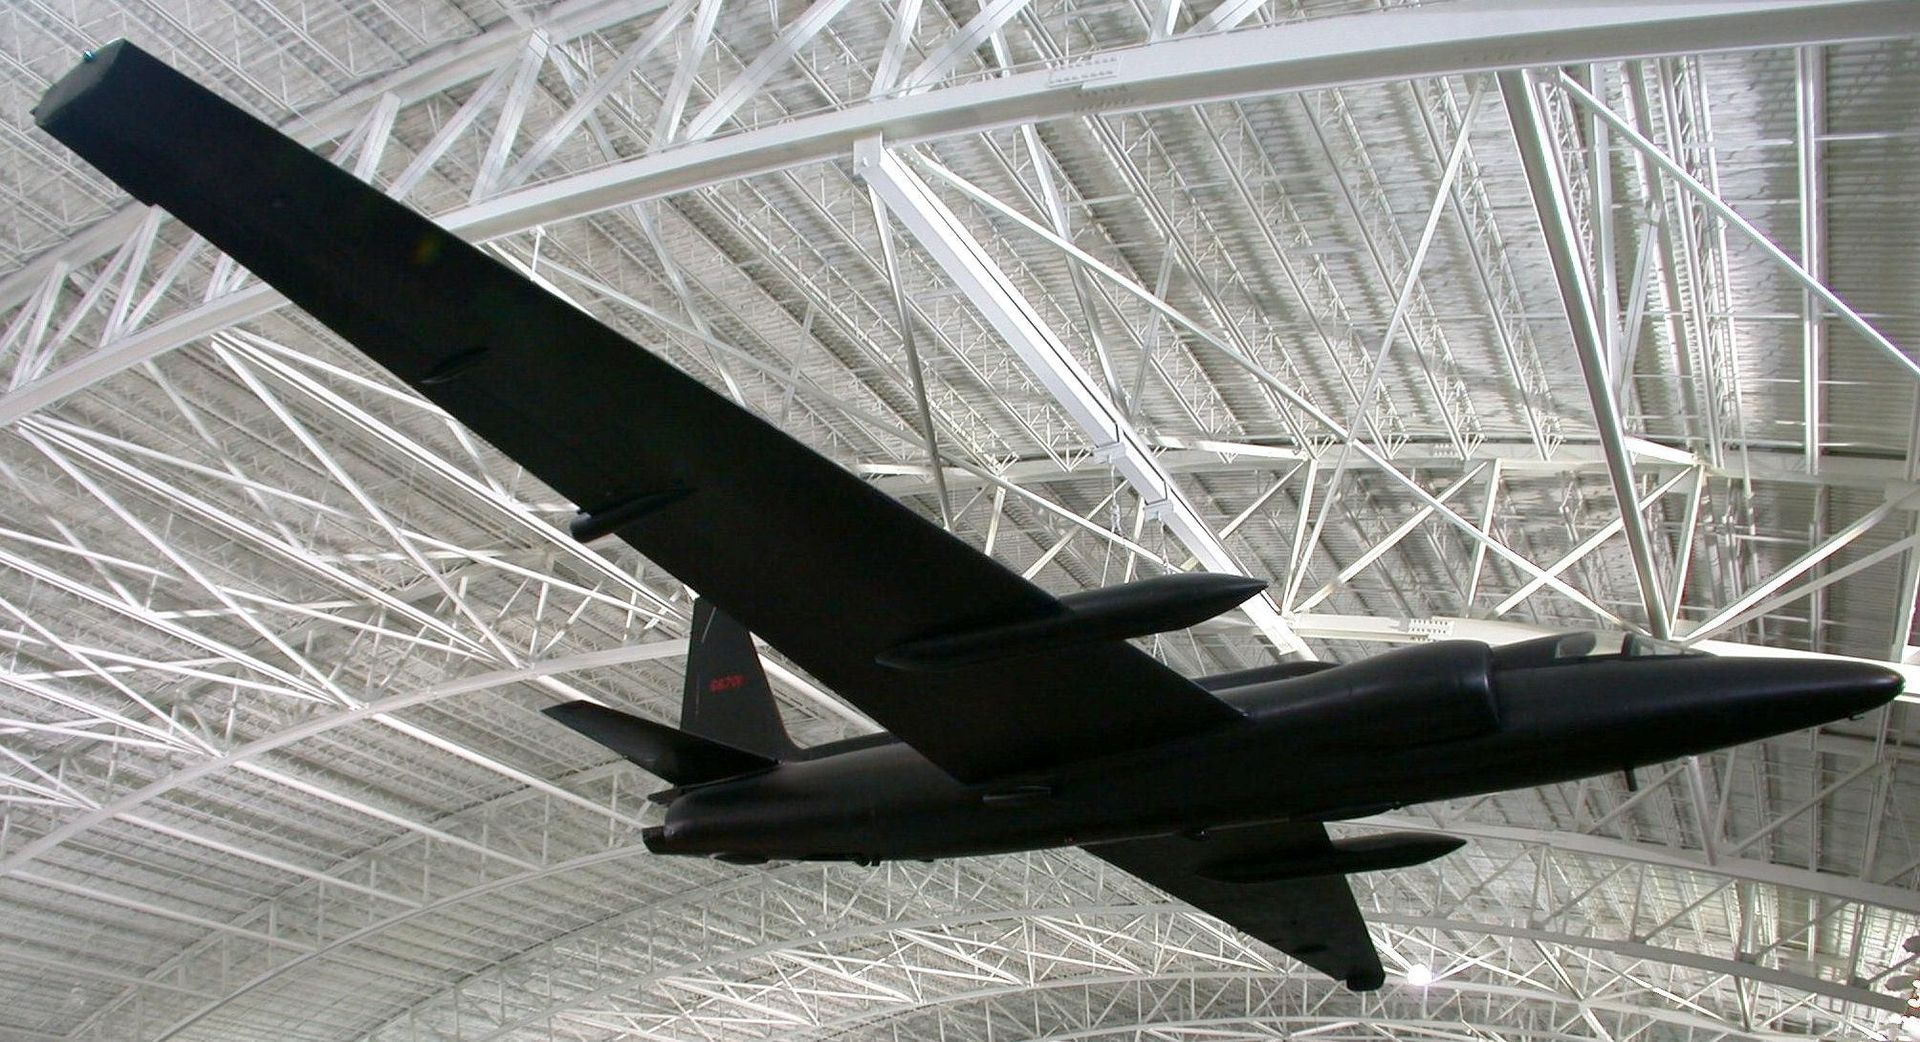 Lockheed U2 spy plane